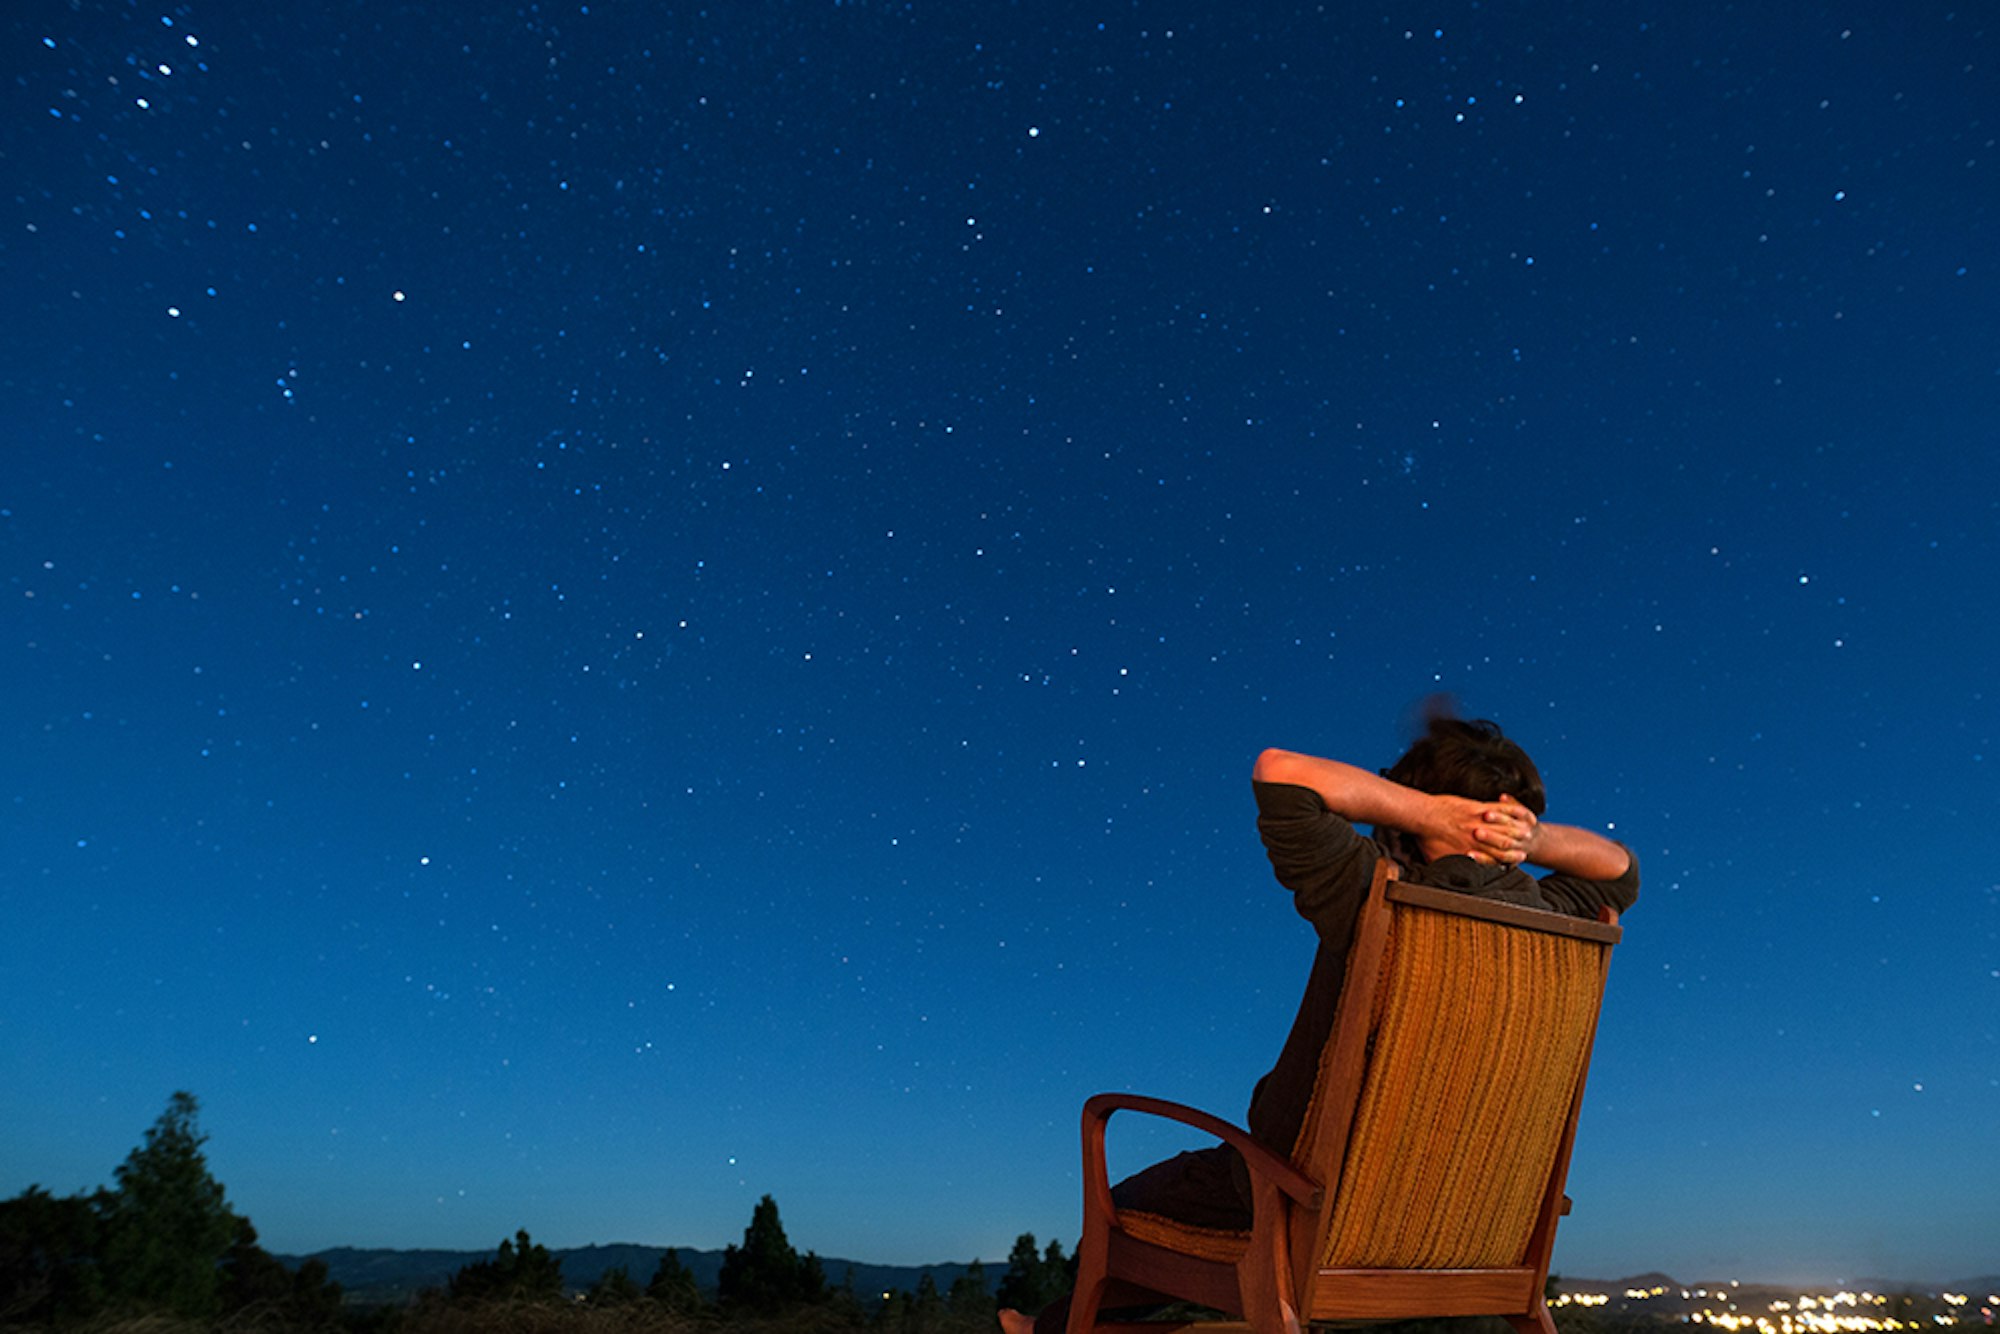 Viele Sternschnuppen sollen in der Nacht vom 12. Auf den 13. August zu sehen sein - pünktlich zu den 90 Millionen Euro im Eurojackpot.